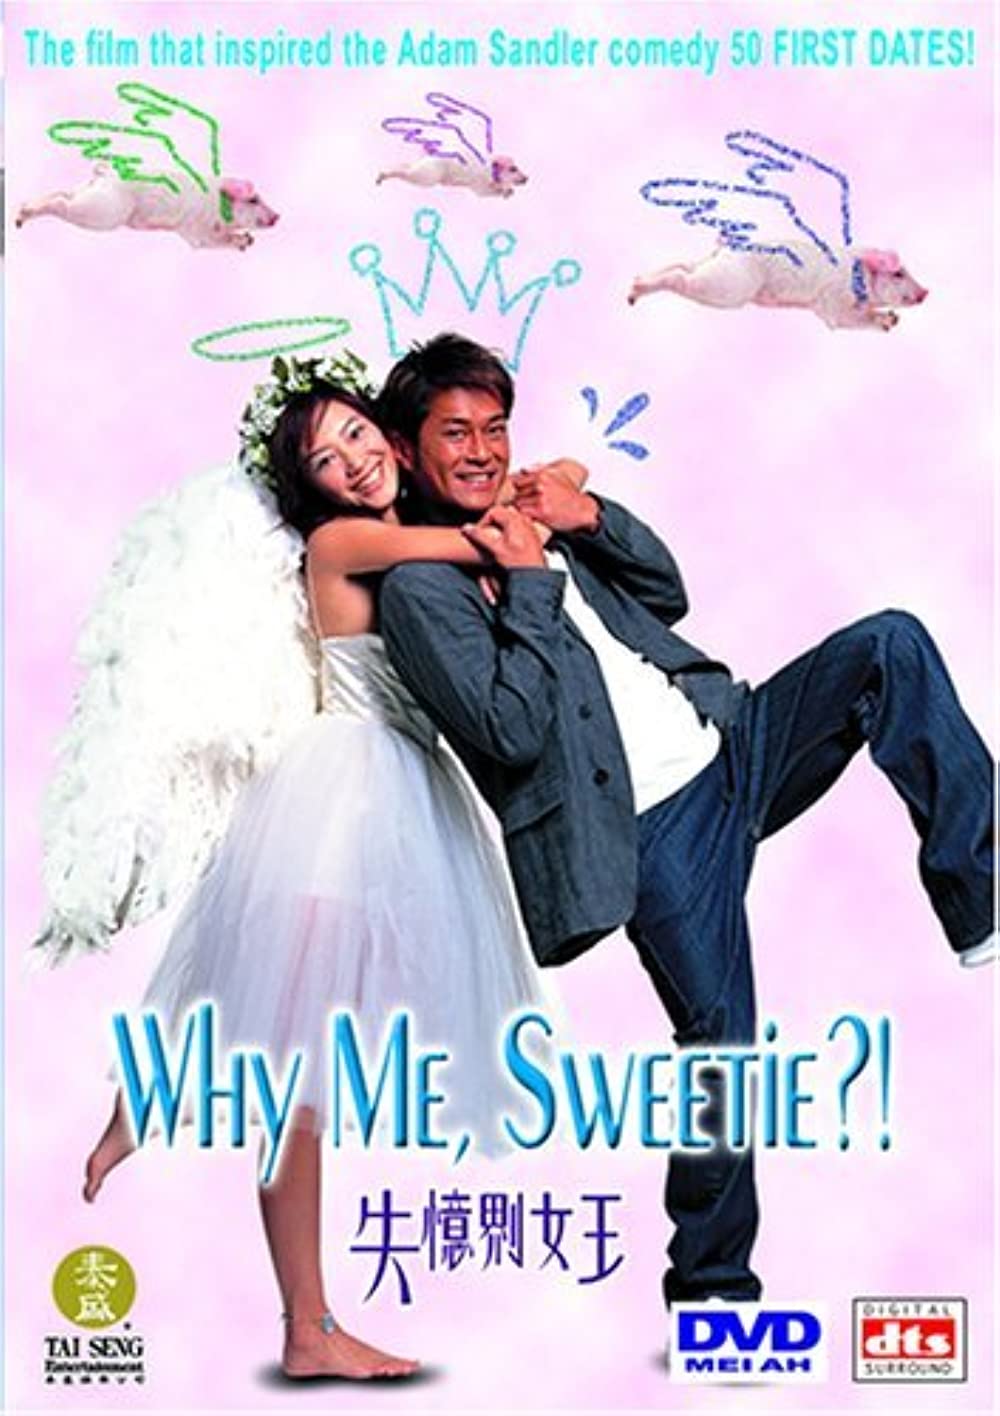 Sat yee gai lui wong (2003)